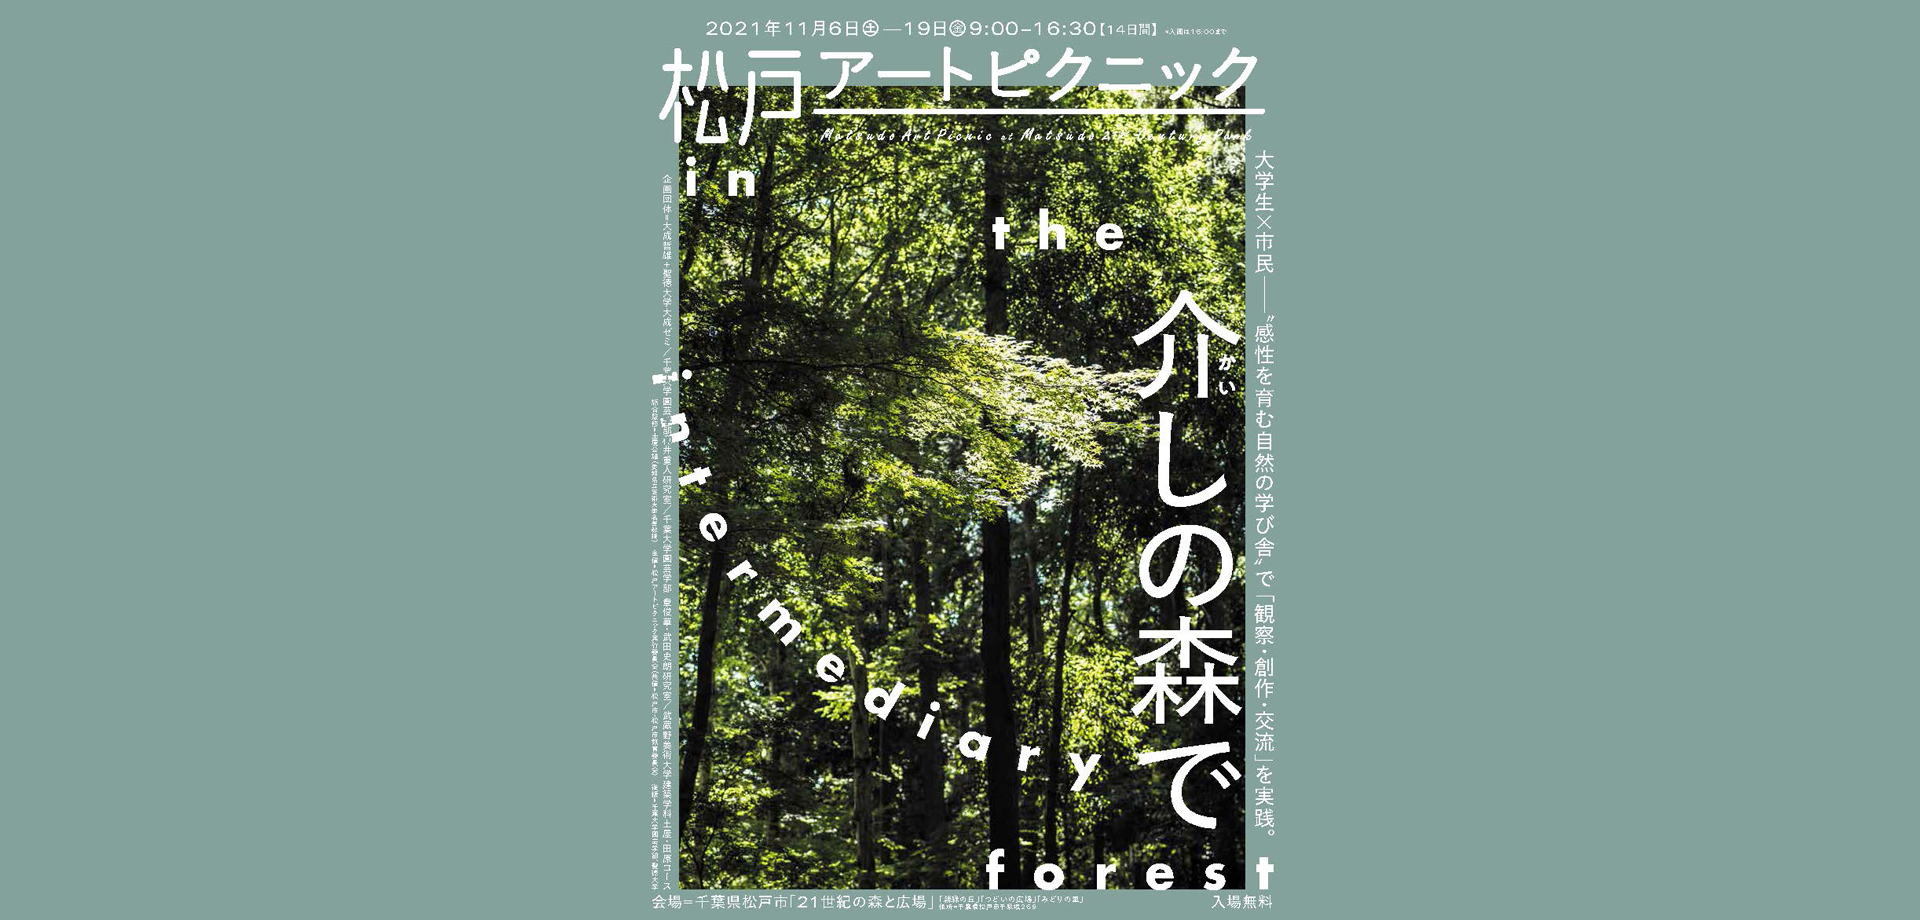 松戸アートピクニック2021 介しの森で in the intermediary forest